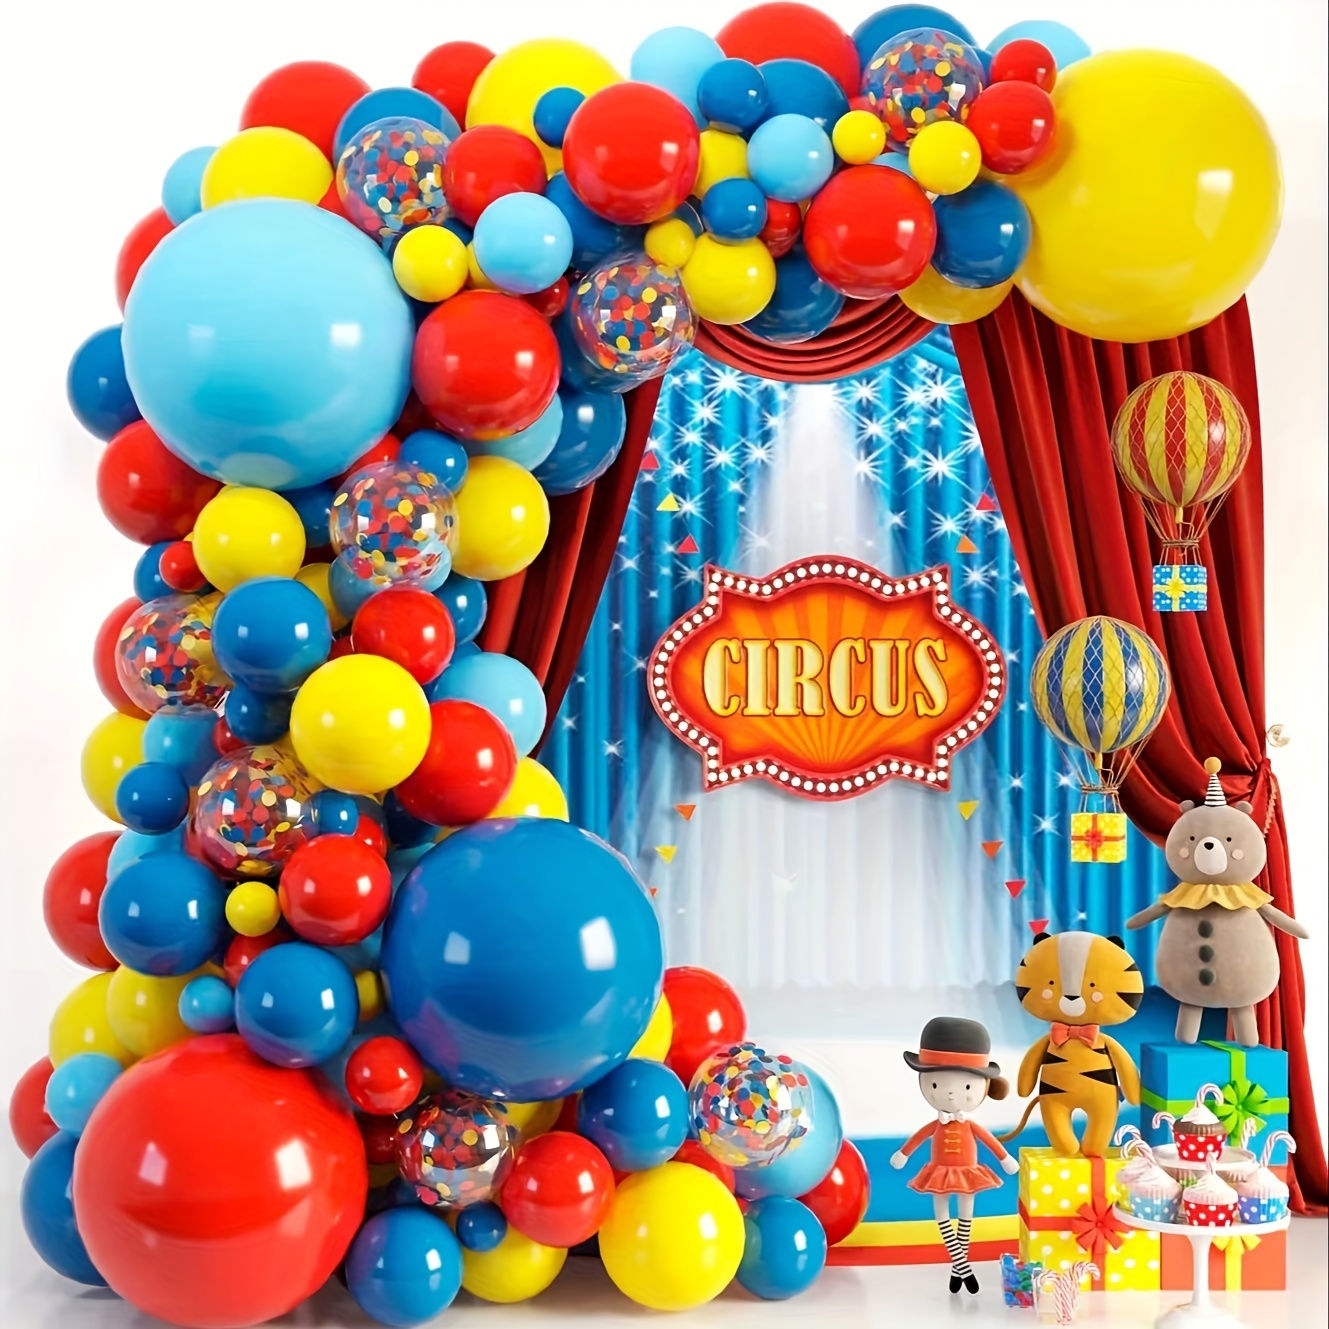 Arco de plástico con flechas color crema para niños, complemento para  carnaval, halloween, fiestas de cumpleaños u otras celebra